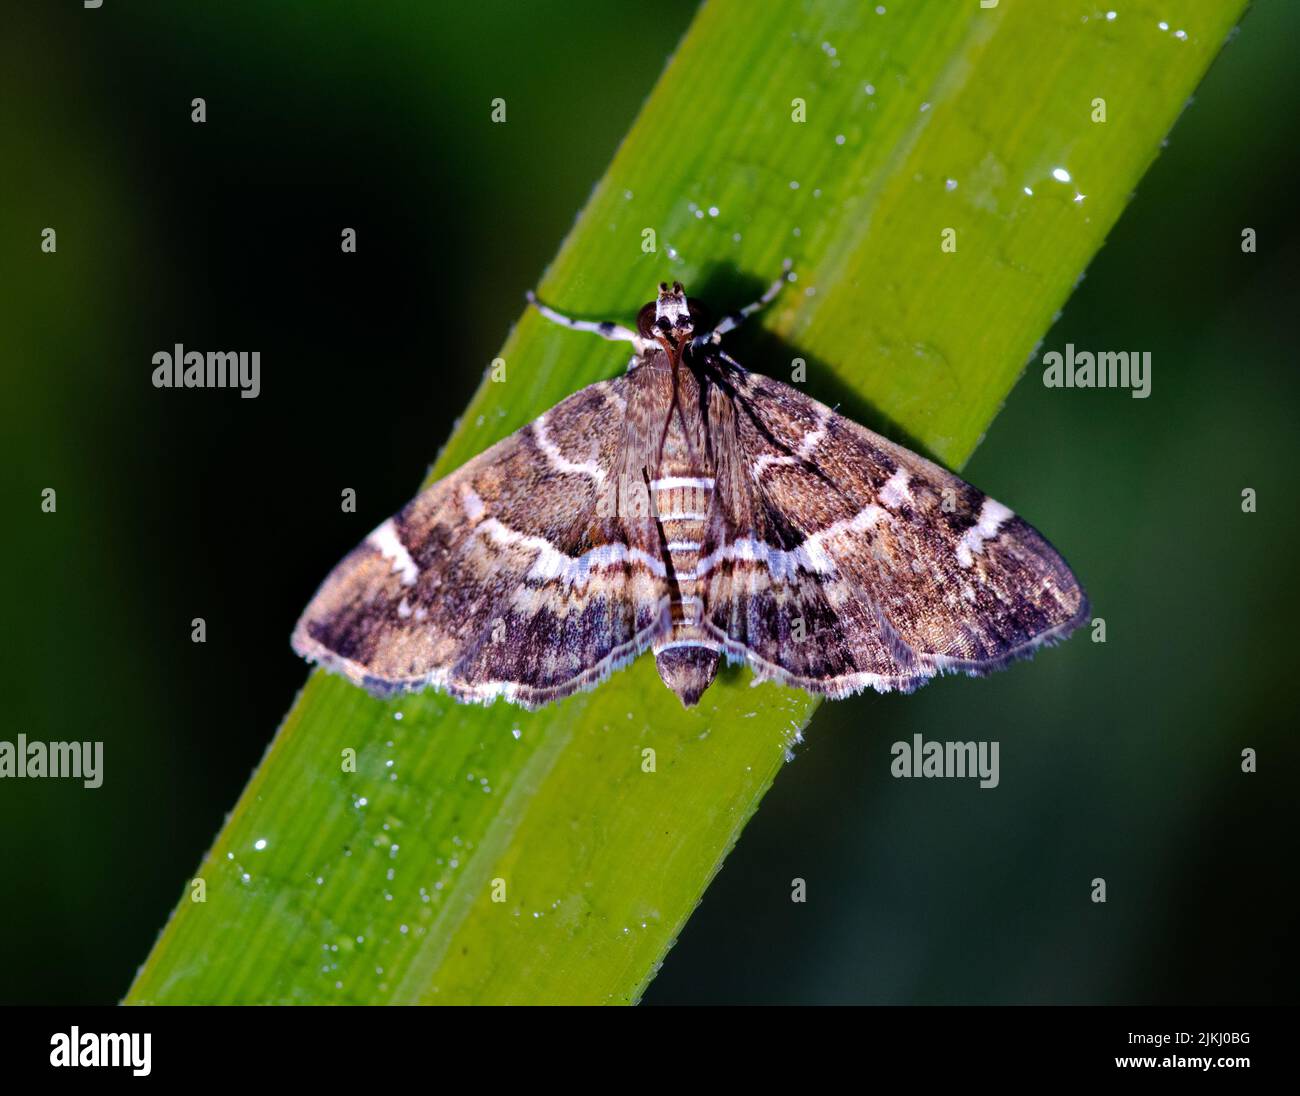 A closeup shot of a snout moth on a grass blade Stock Photo